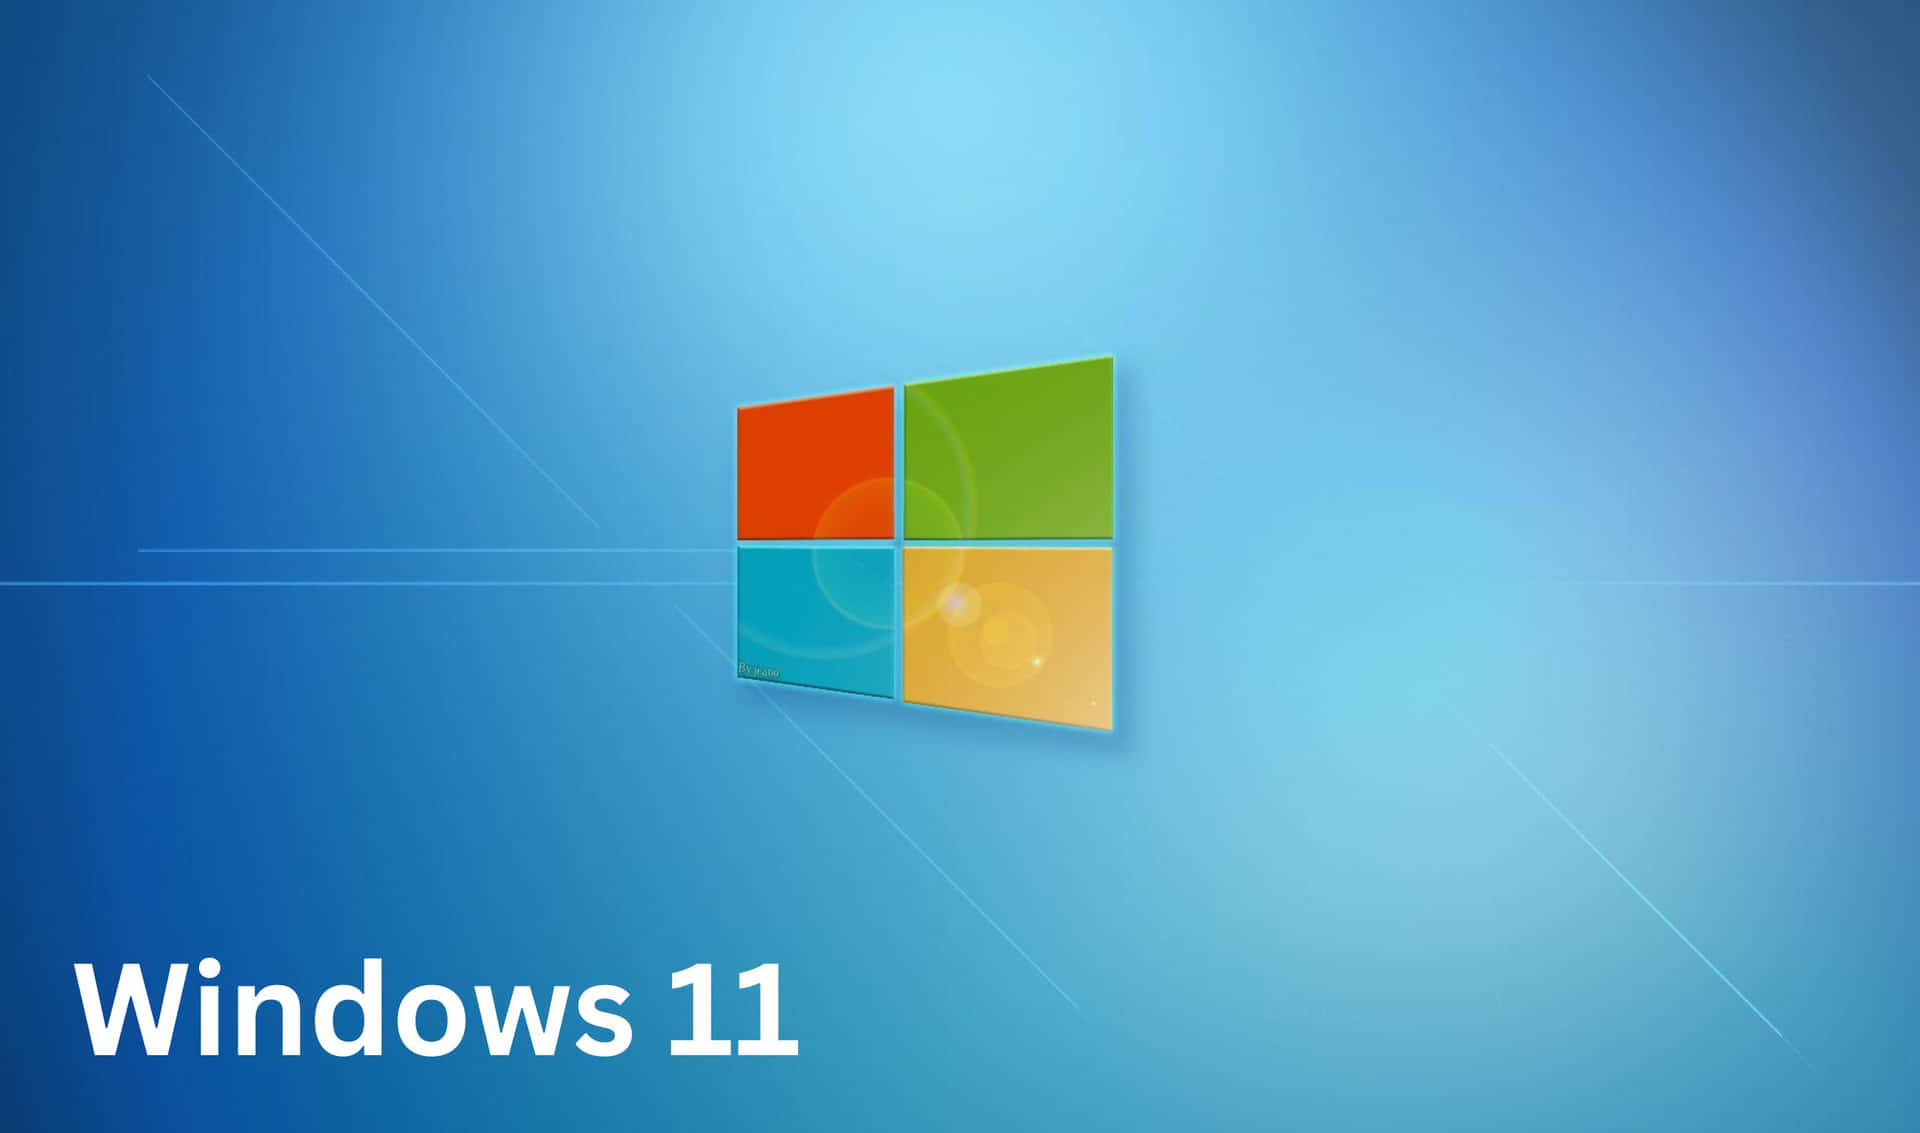 Preparese Para O Mais Novo Sistema Operacional Da Microsoft, O Windows 11.